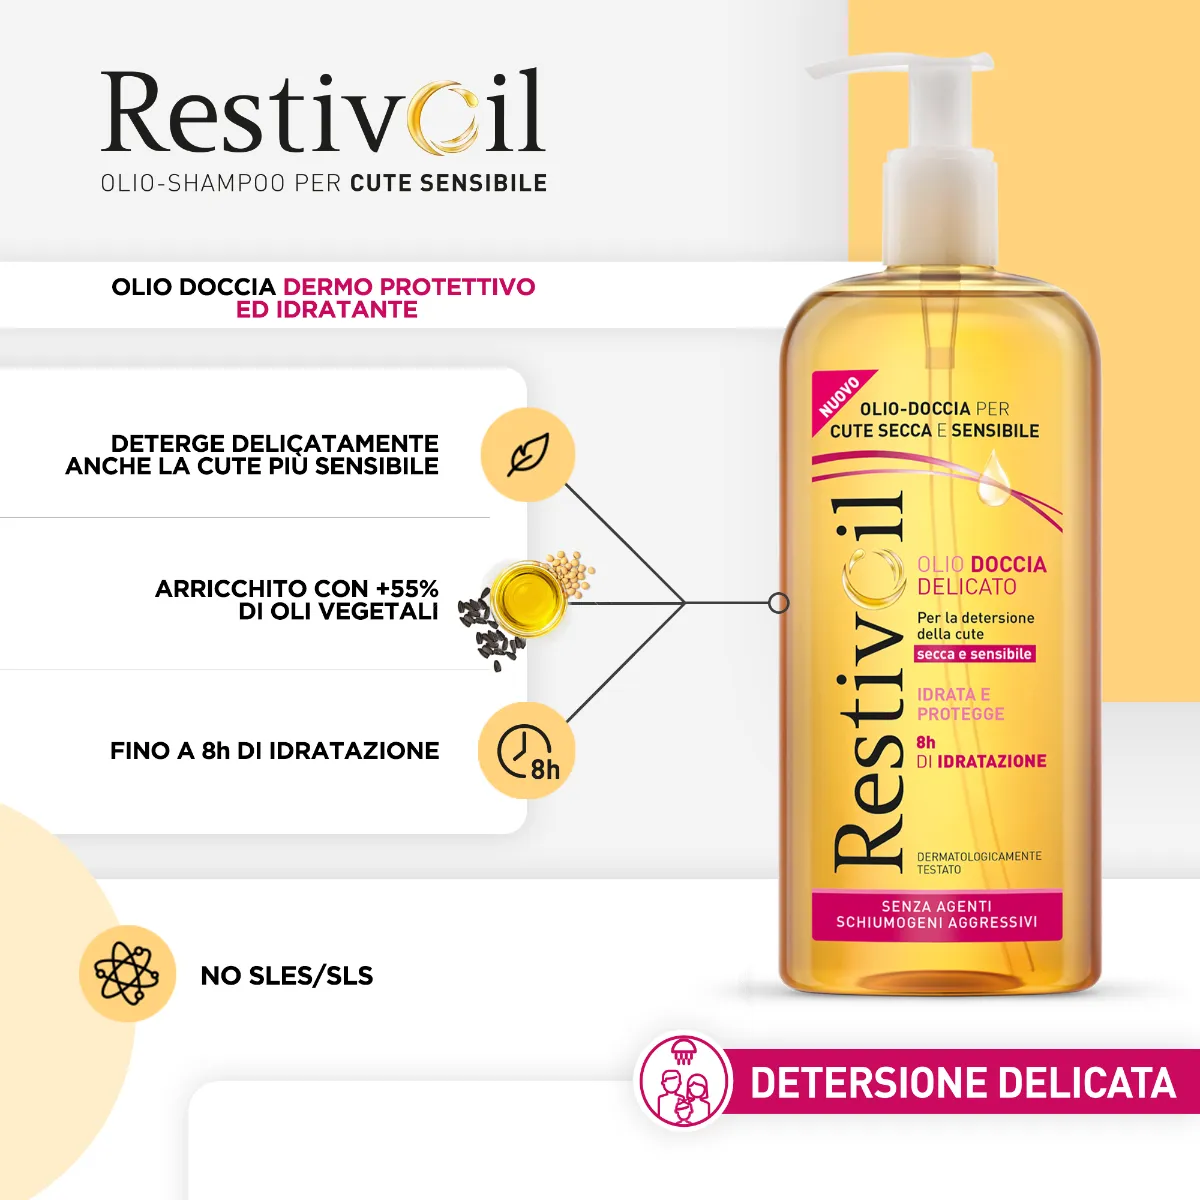 Restivoil Olio Doccia Delicato Detergente Corpo 400 ml 